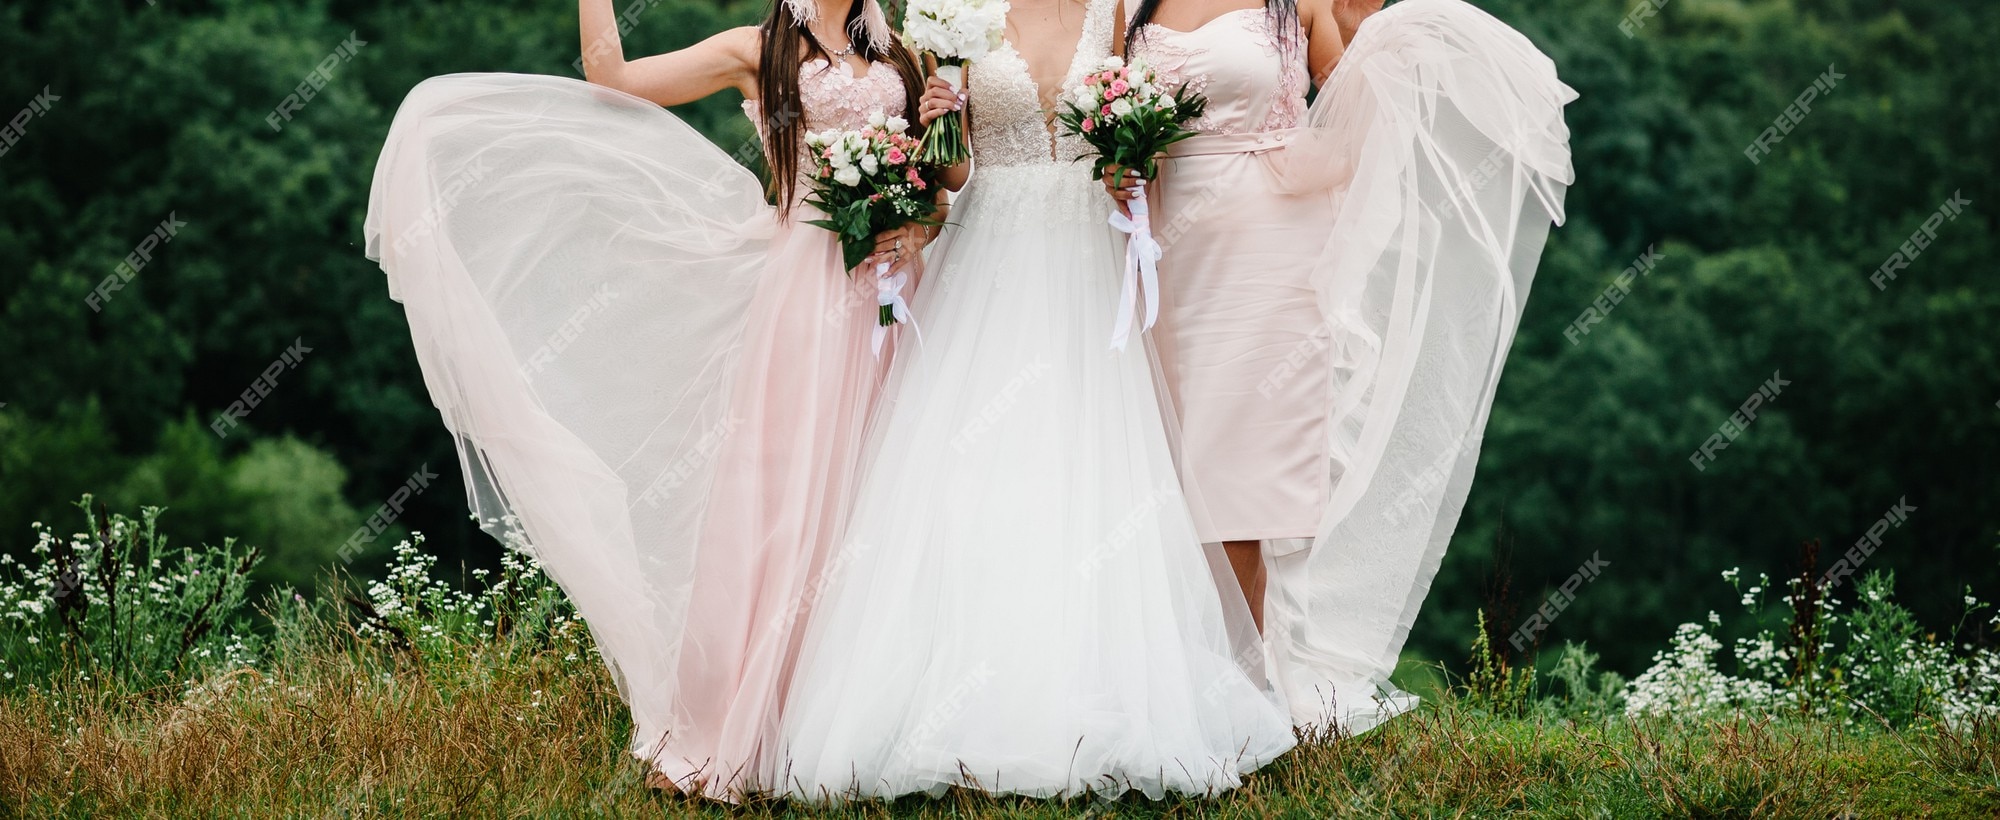 La novia y las damas de honor con un elegante vestido están de pie y sosteniendo ramos de de color rosa pastel y verdes con una cinta en la naturaleza. niñas